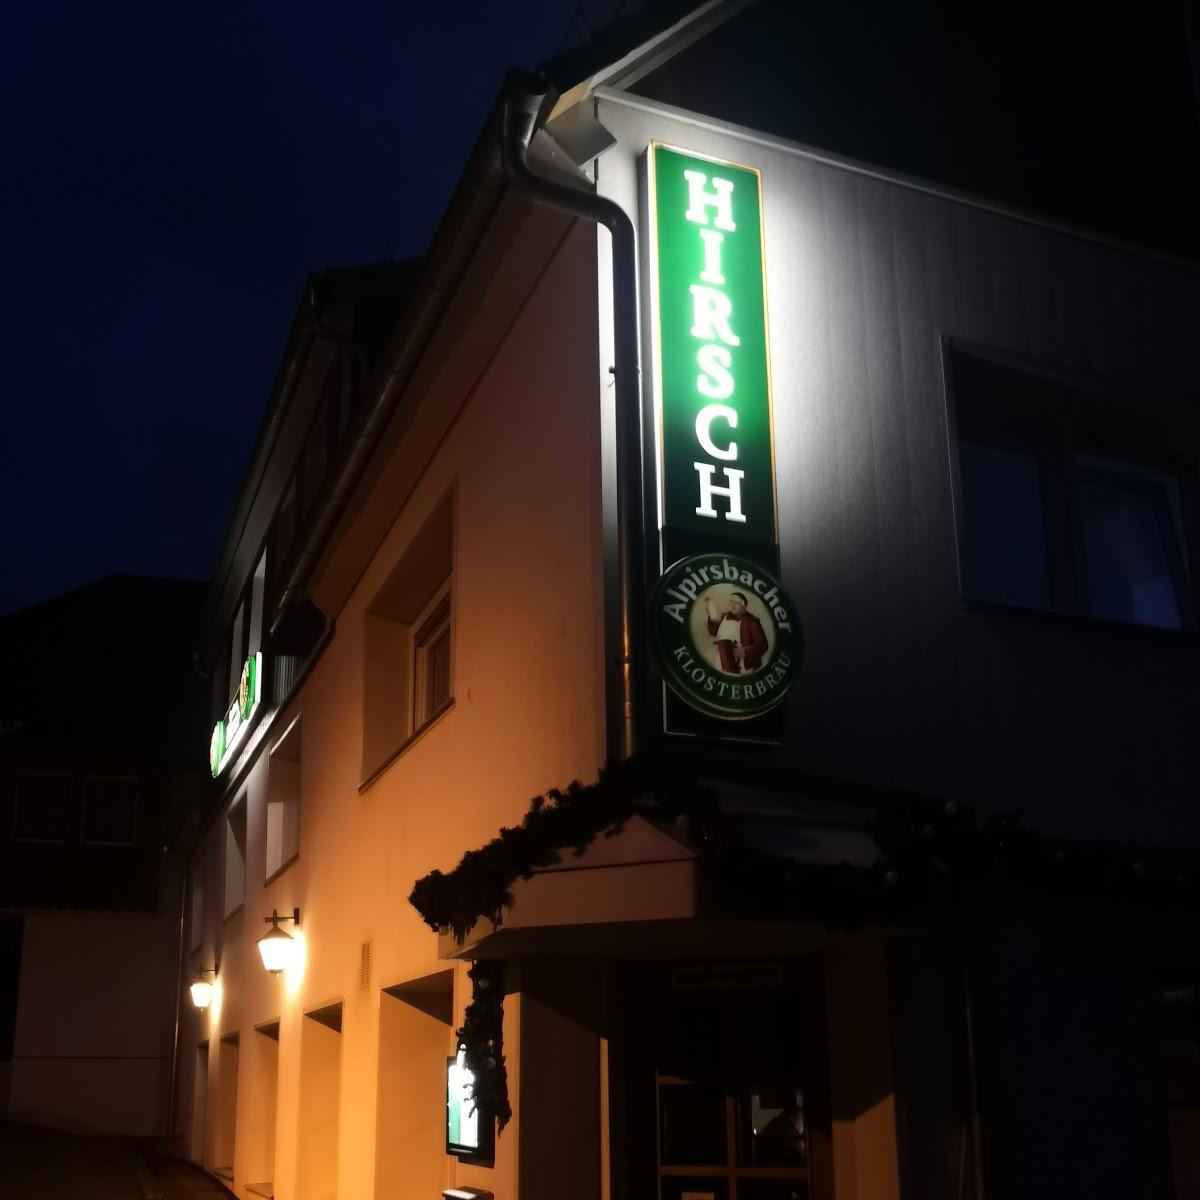 Restaurant "Gasthof Hirsch" in Waldachtal